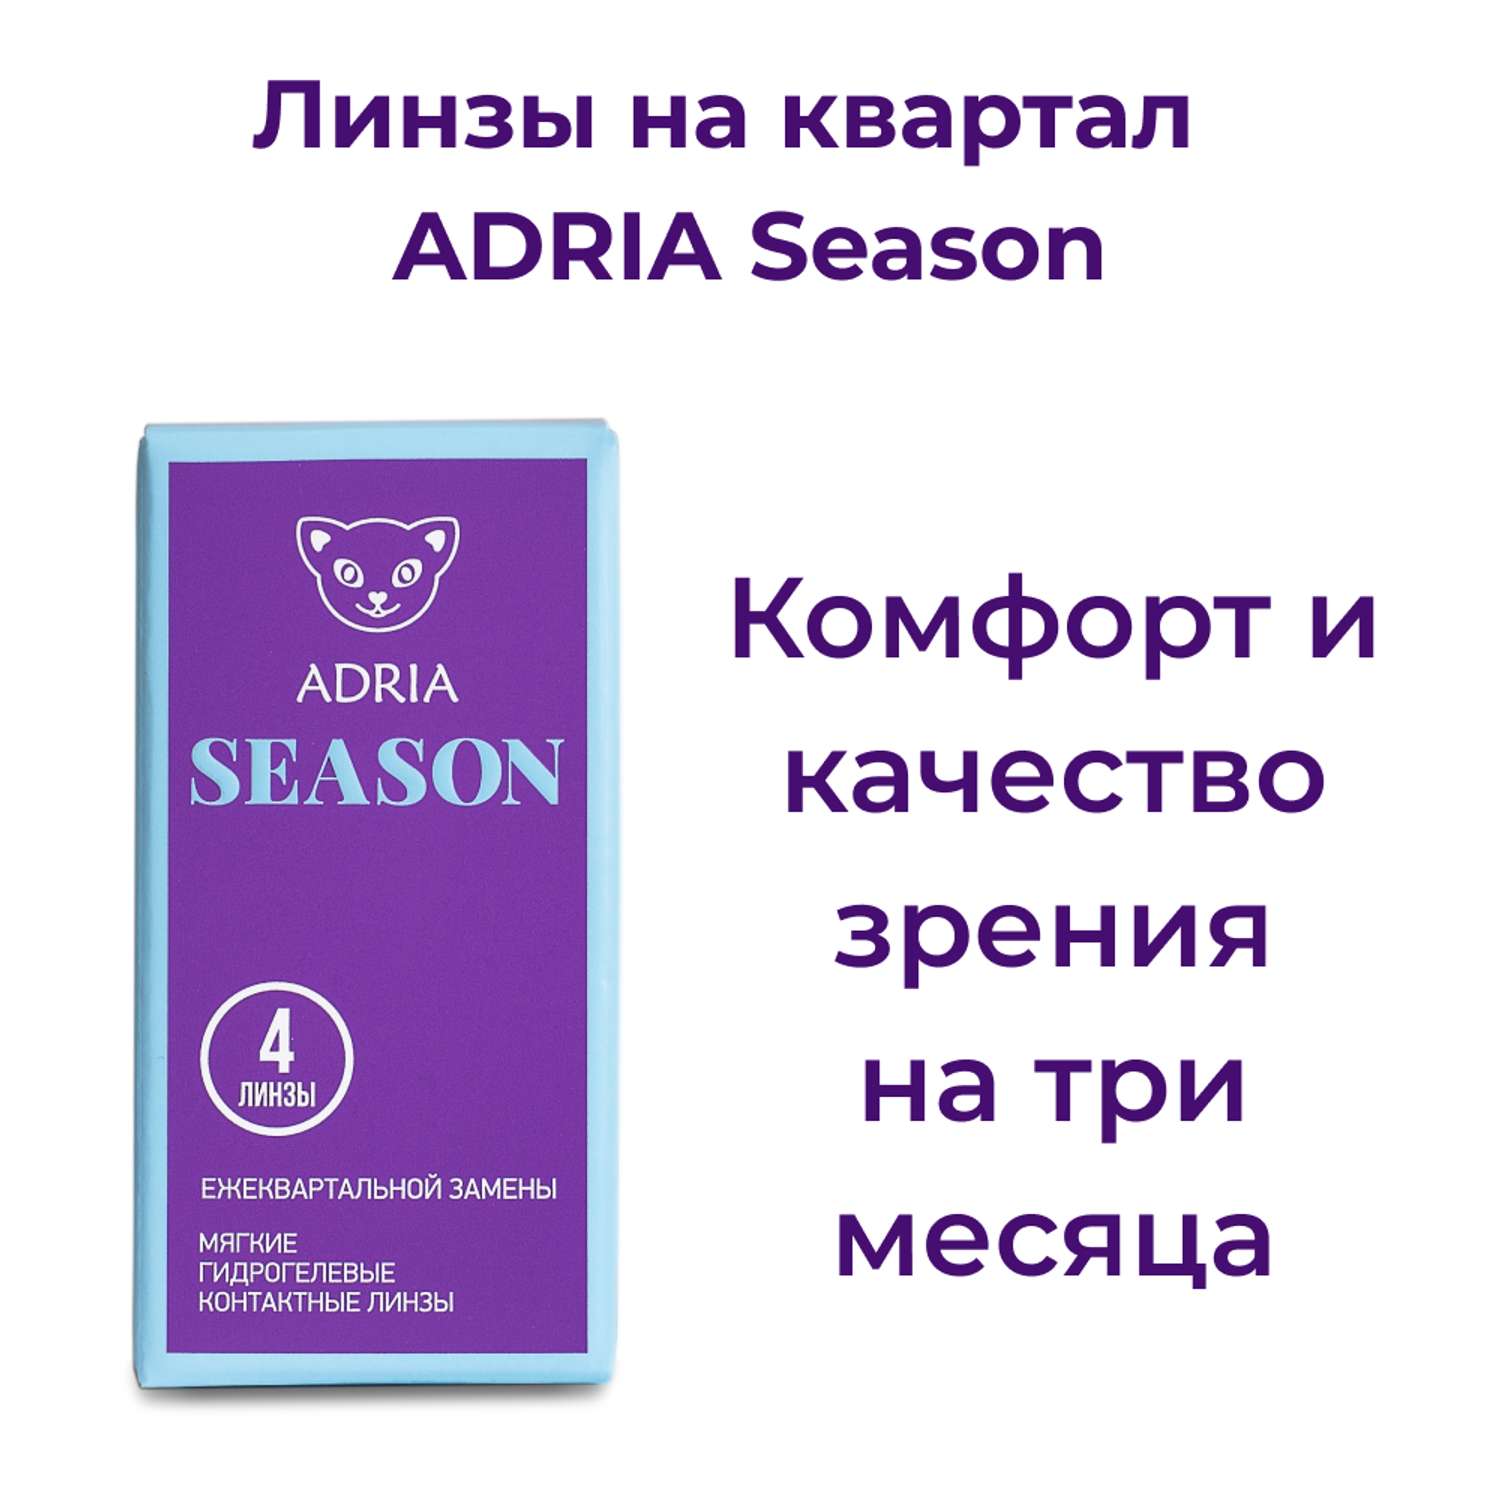 Контактные линзы ADRIA Season 4 линзы R 8.6 -4.50 - фото 2